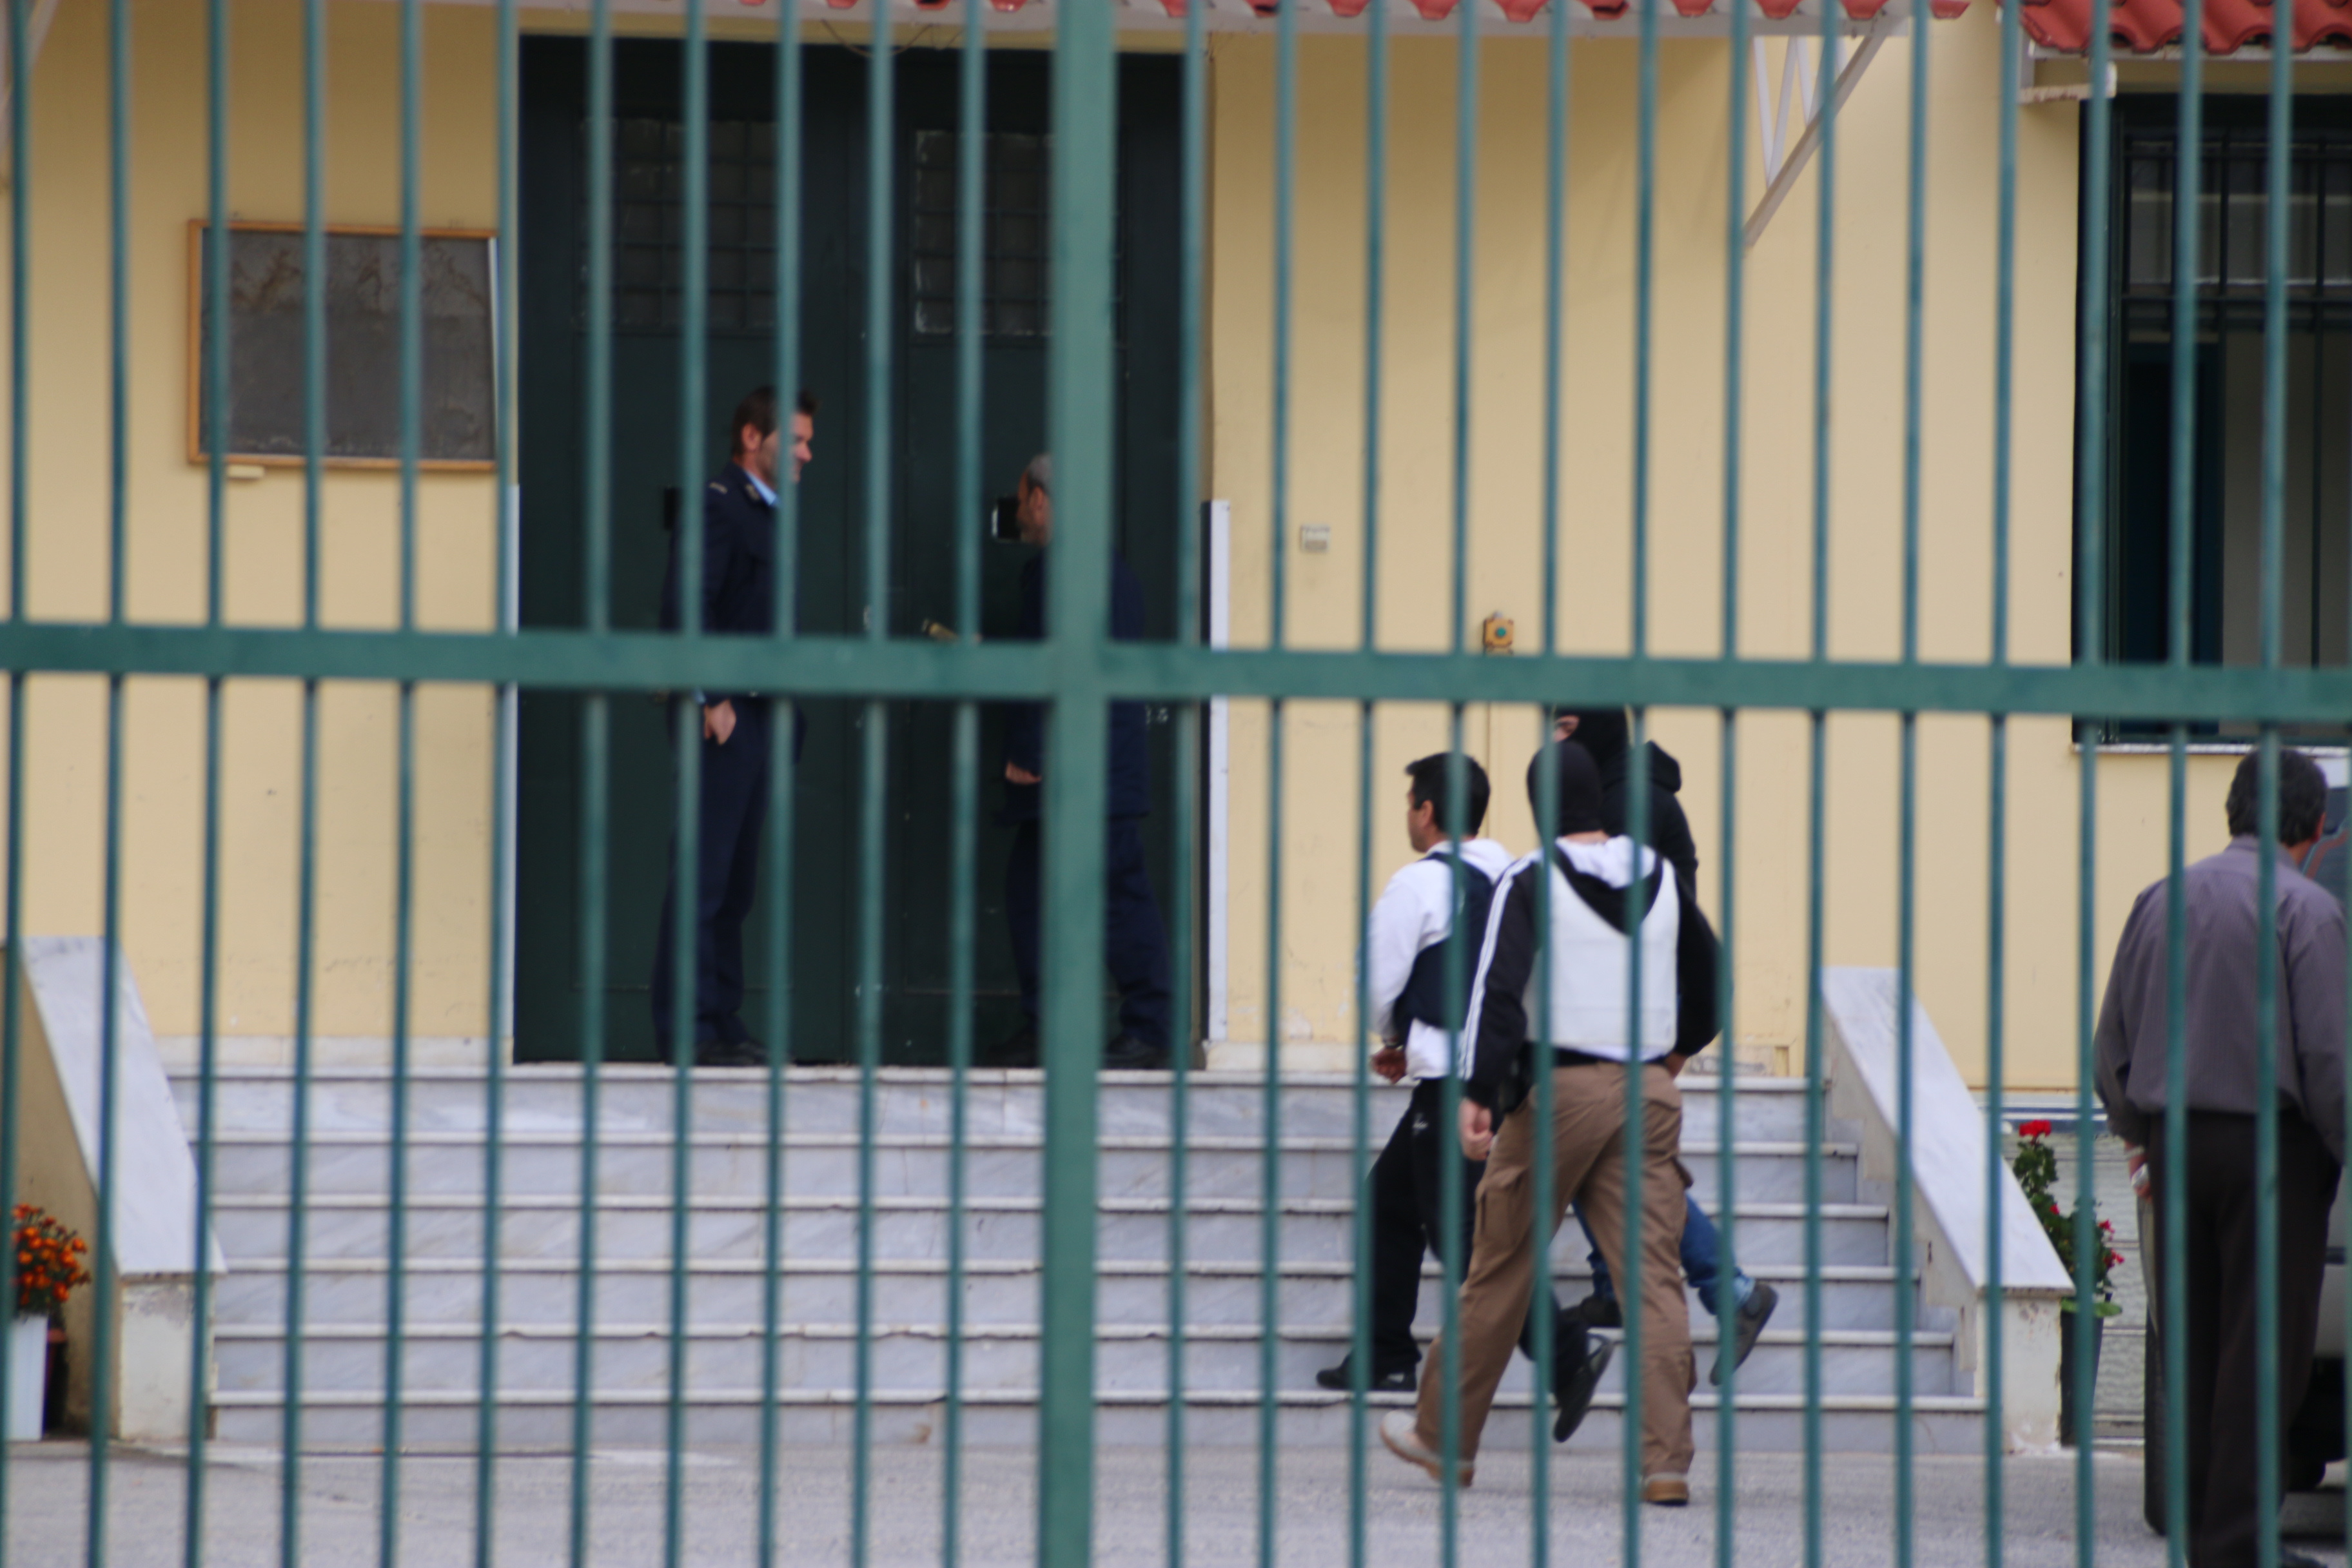 Στο ίδιο κελί Γερμενής και Ηλιόπουλος – Τι ζήτησαν μόλις έφτασαν στις φυλακές Κορυδαλλού